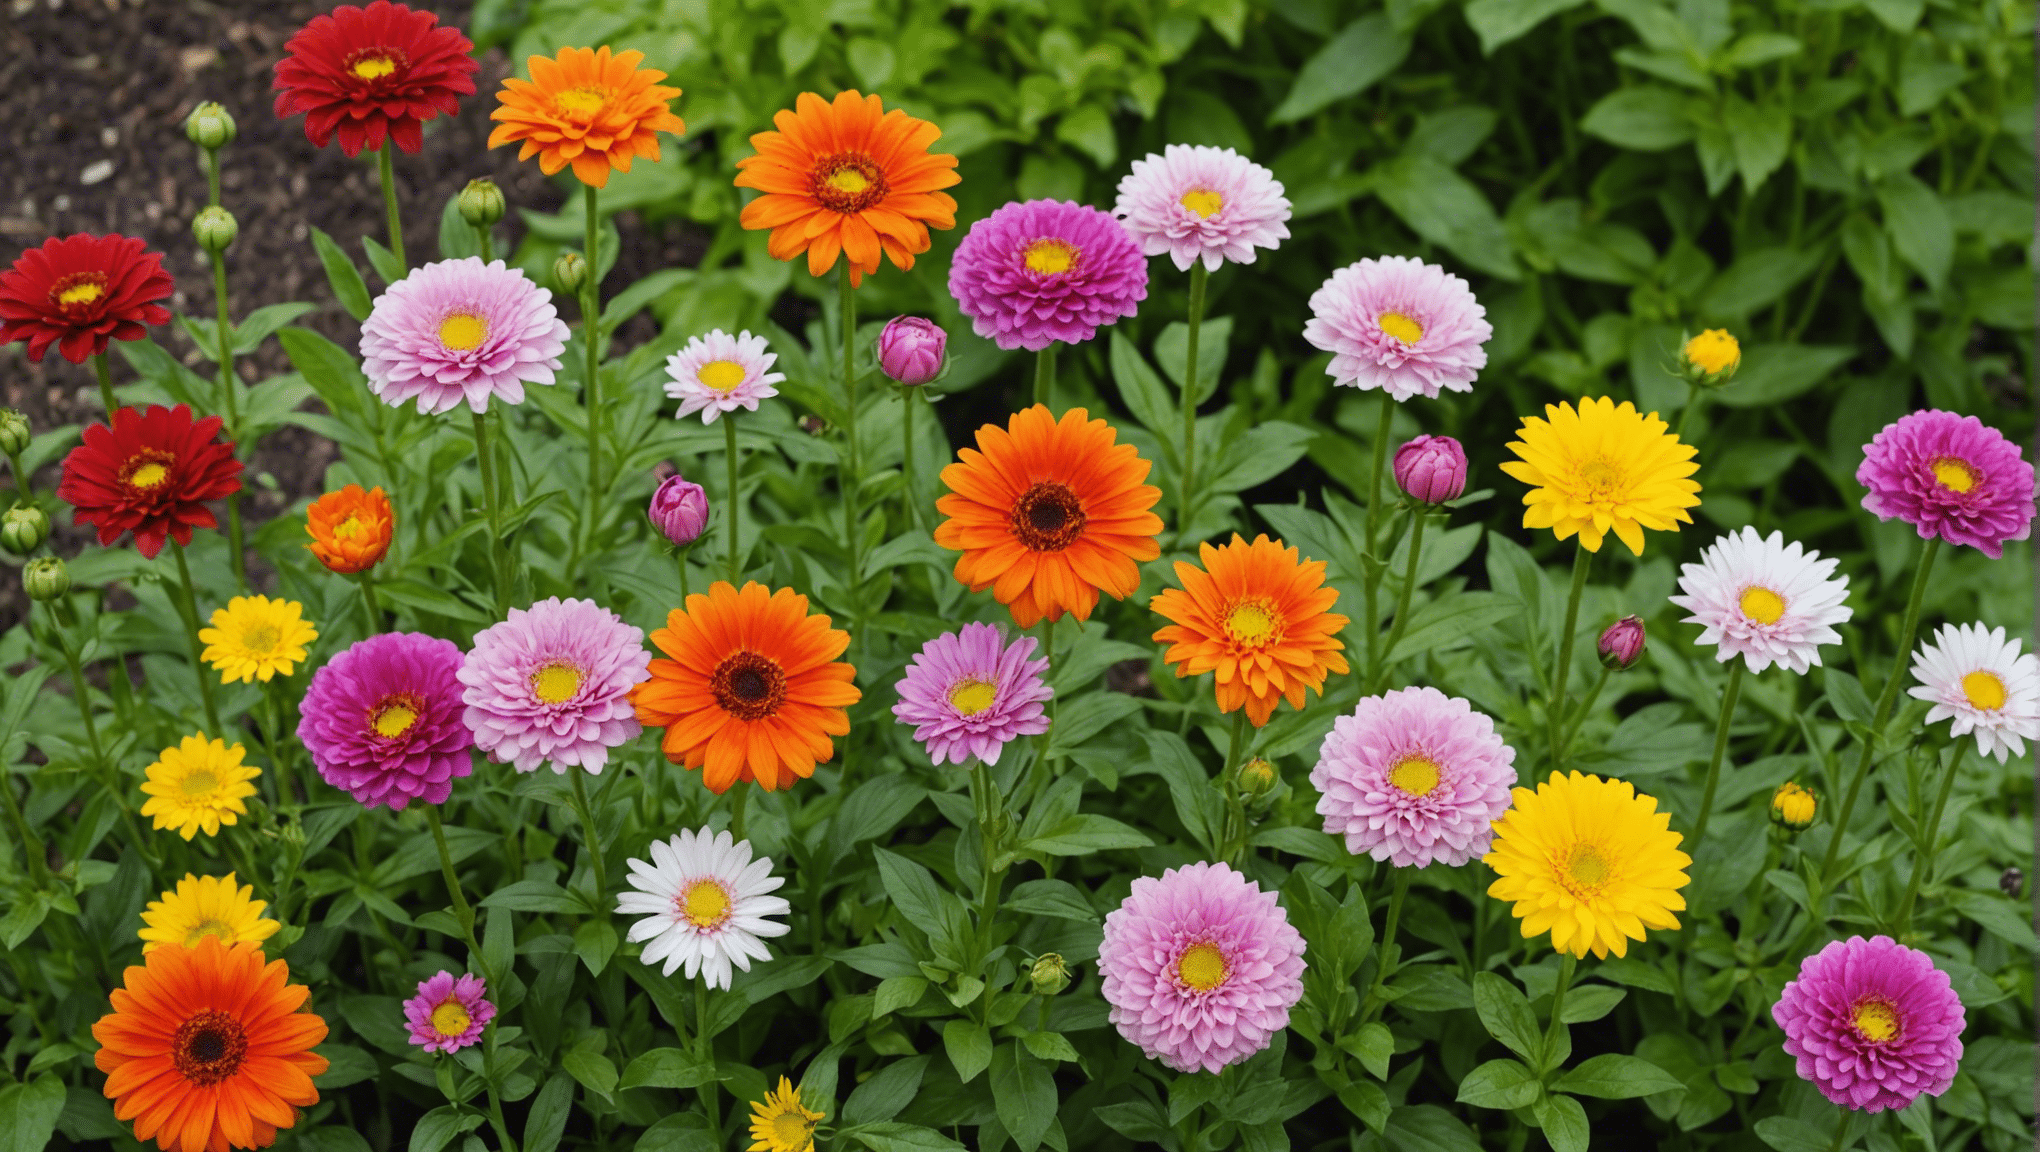 découvrez 5 variétés de fleurs comestibles à faire pousser dans votre jardin pour enrichir vos recettes ! en plus d'apporter une touche colorée à vos plats, ces fleurs apportent une saveur unique et originale à vos créations culinaires.